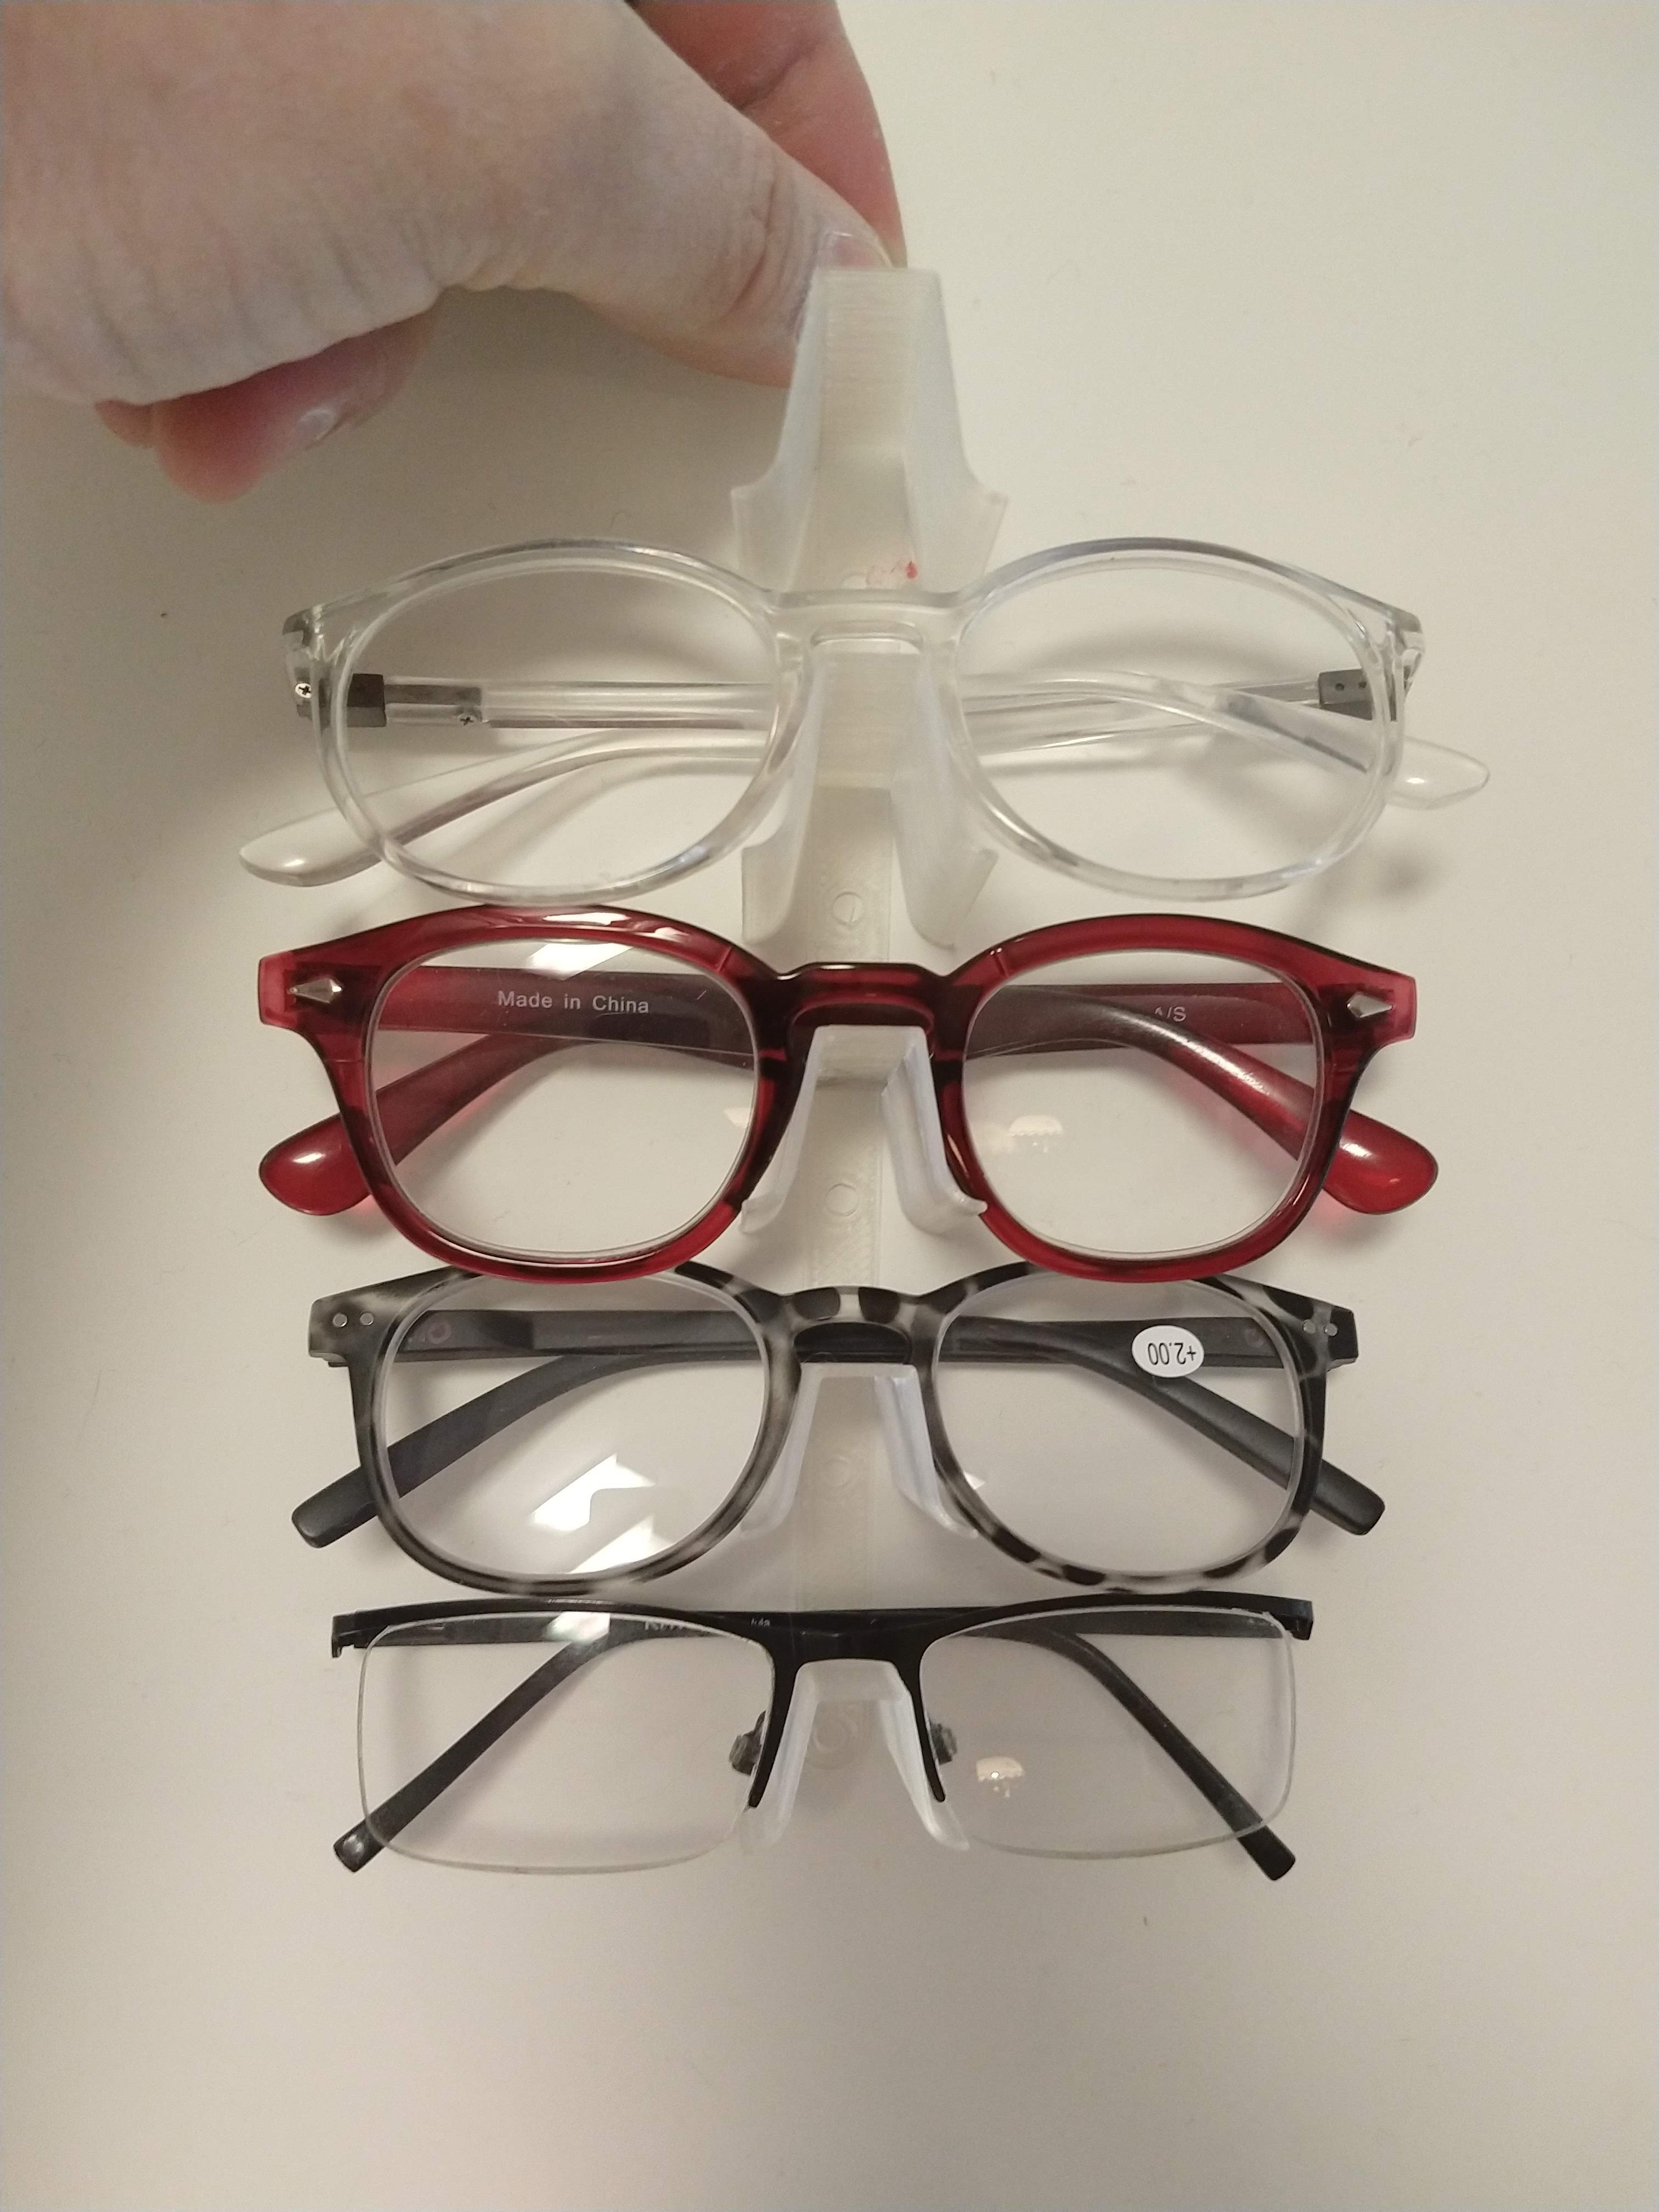 Eyeglasses Holder Minimalist